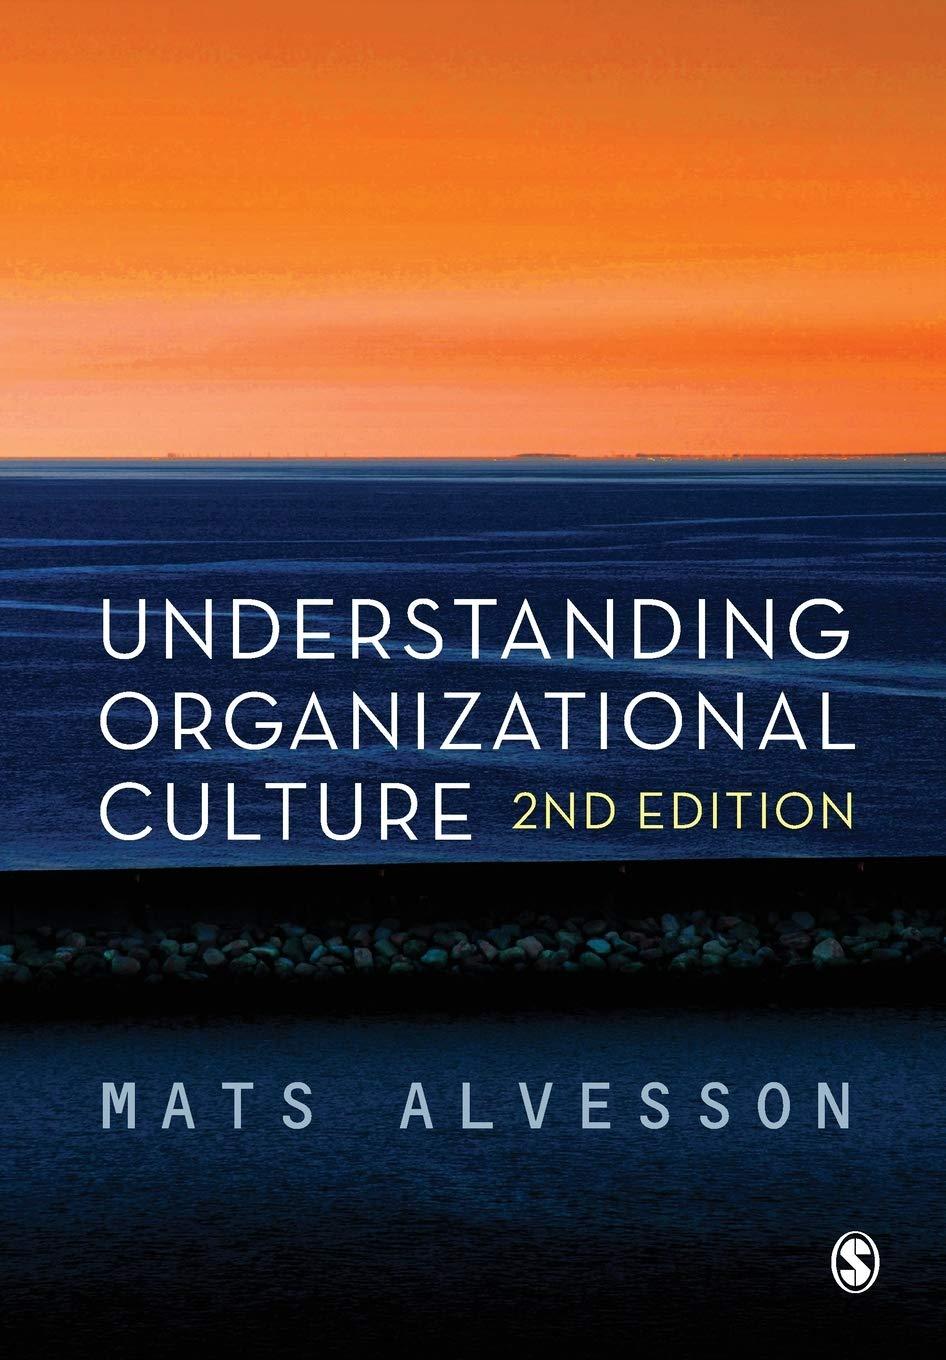 understanding organizational culture 2nd edition mats alvesson 0857025589, 978-0857025586